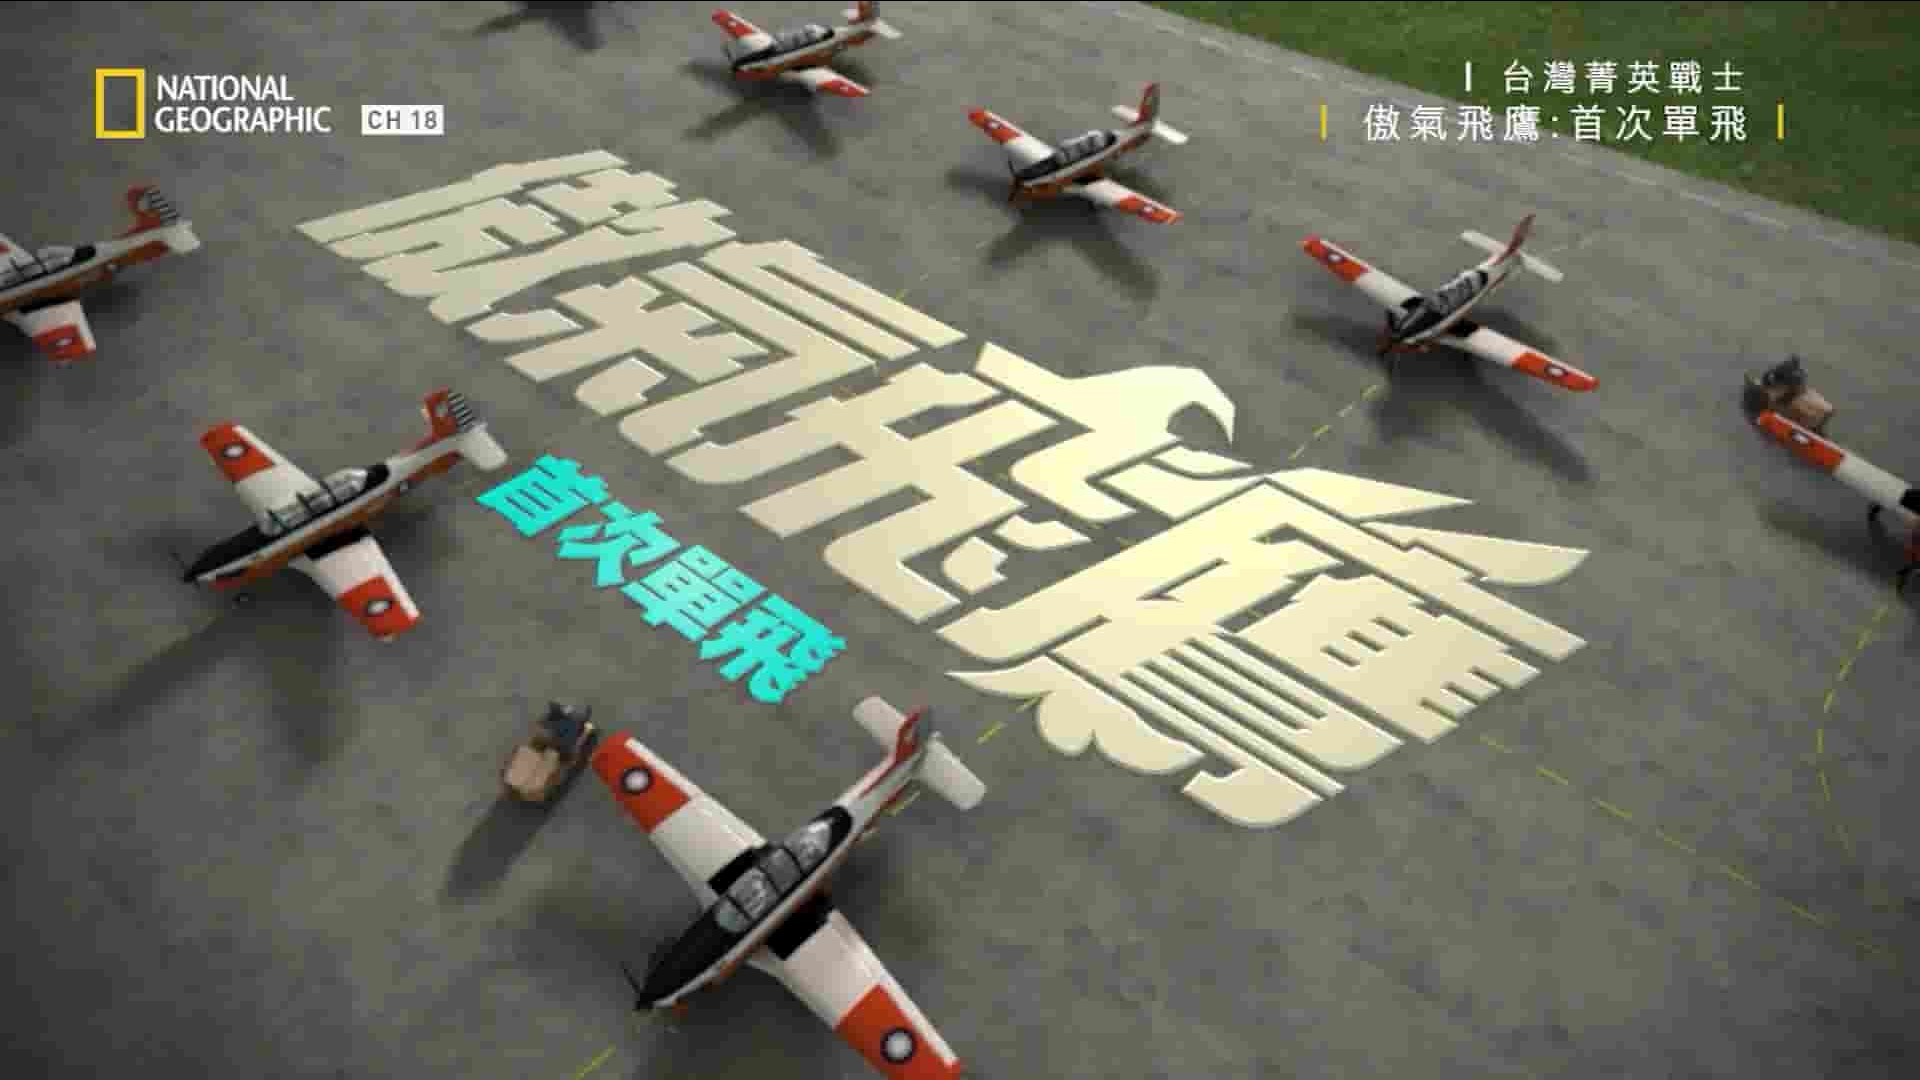 台湾纪录片《台湾菁英战士:傲气飞鹰 Taiwan